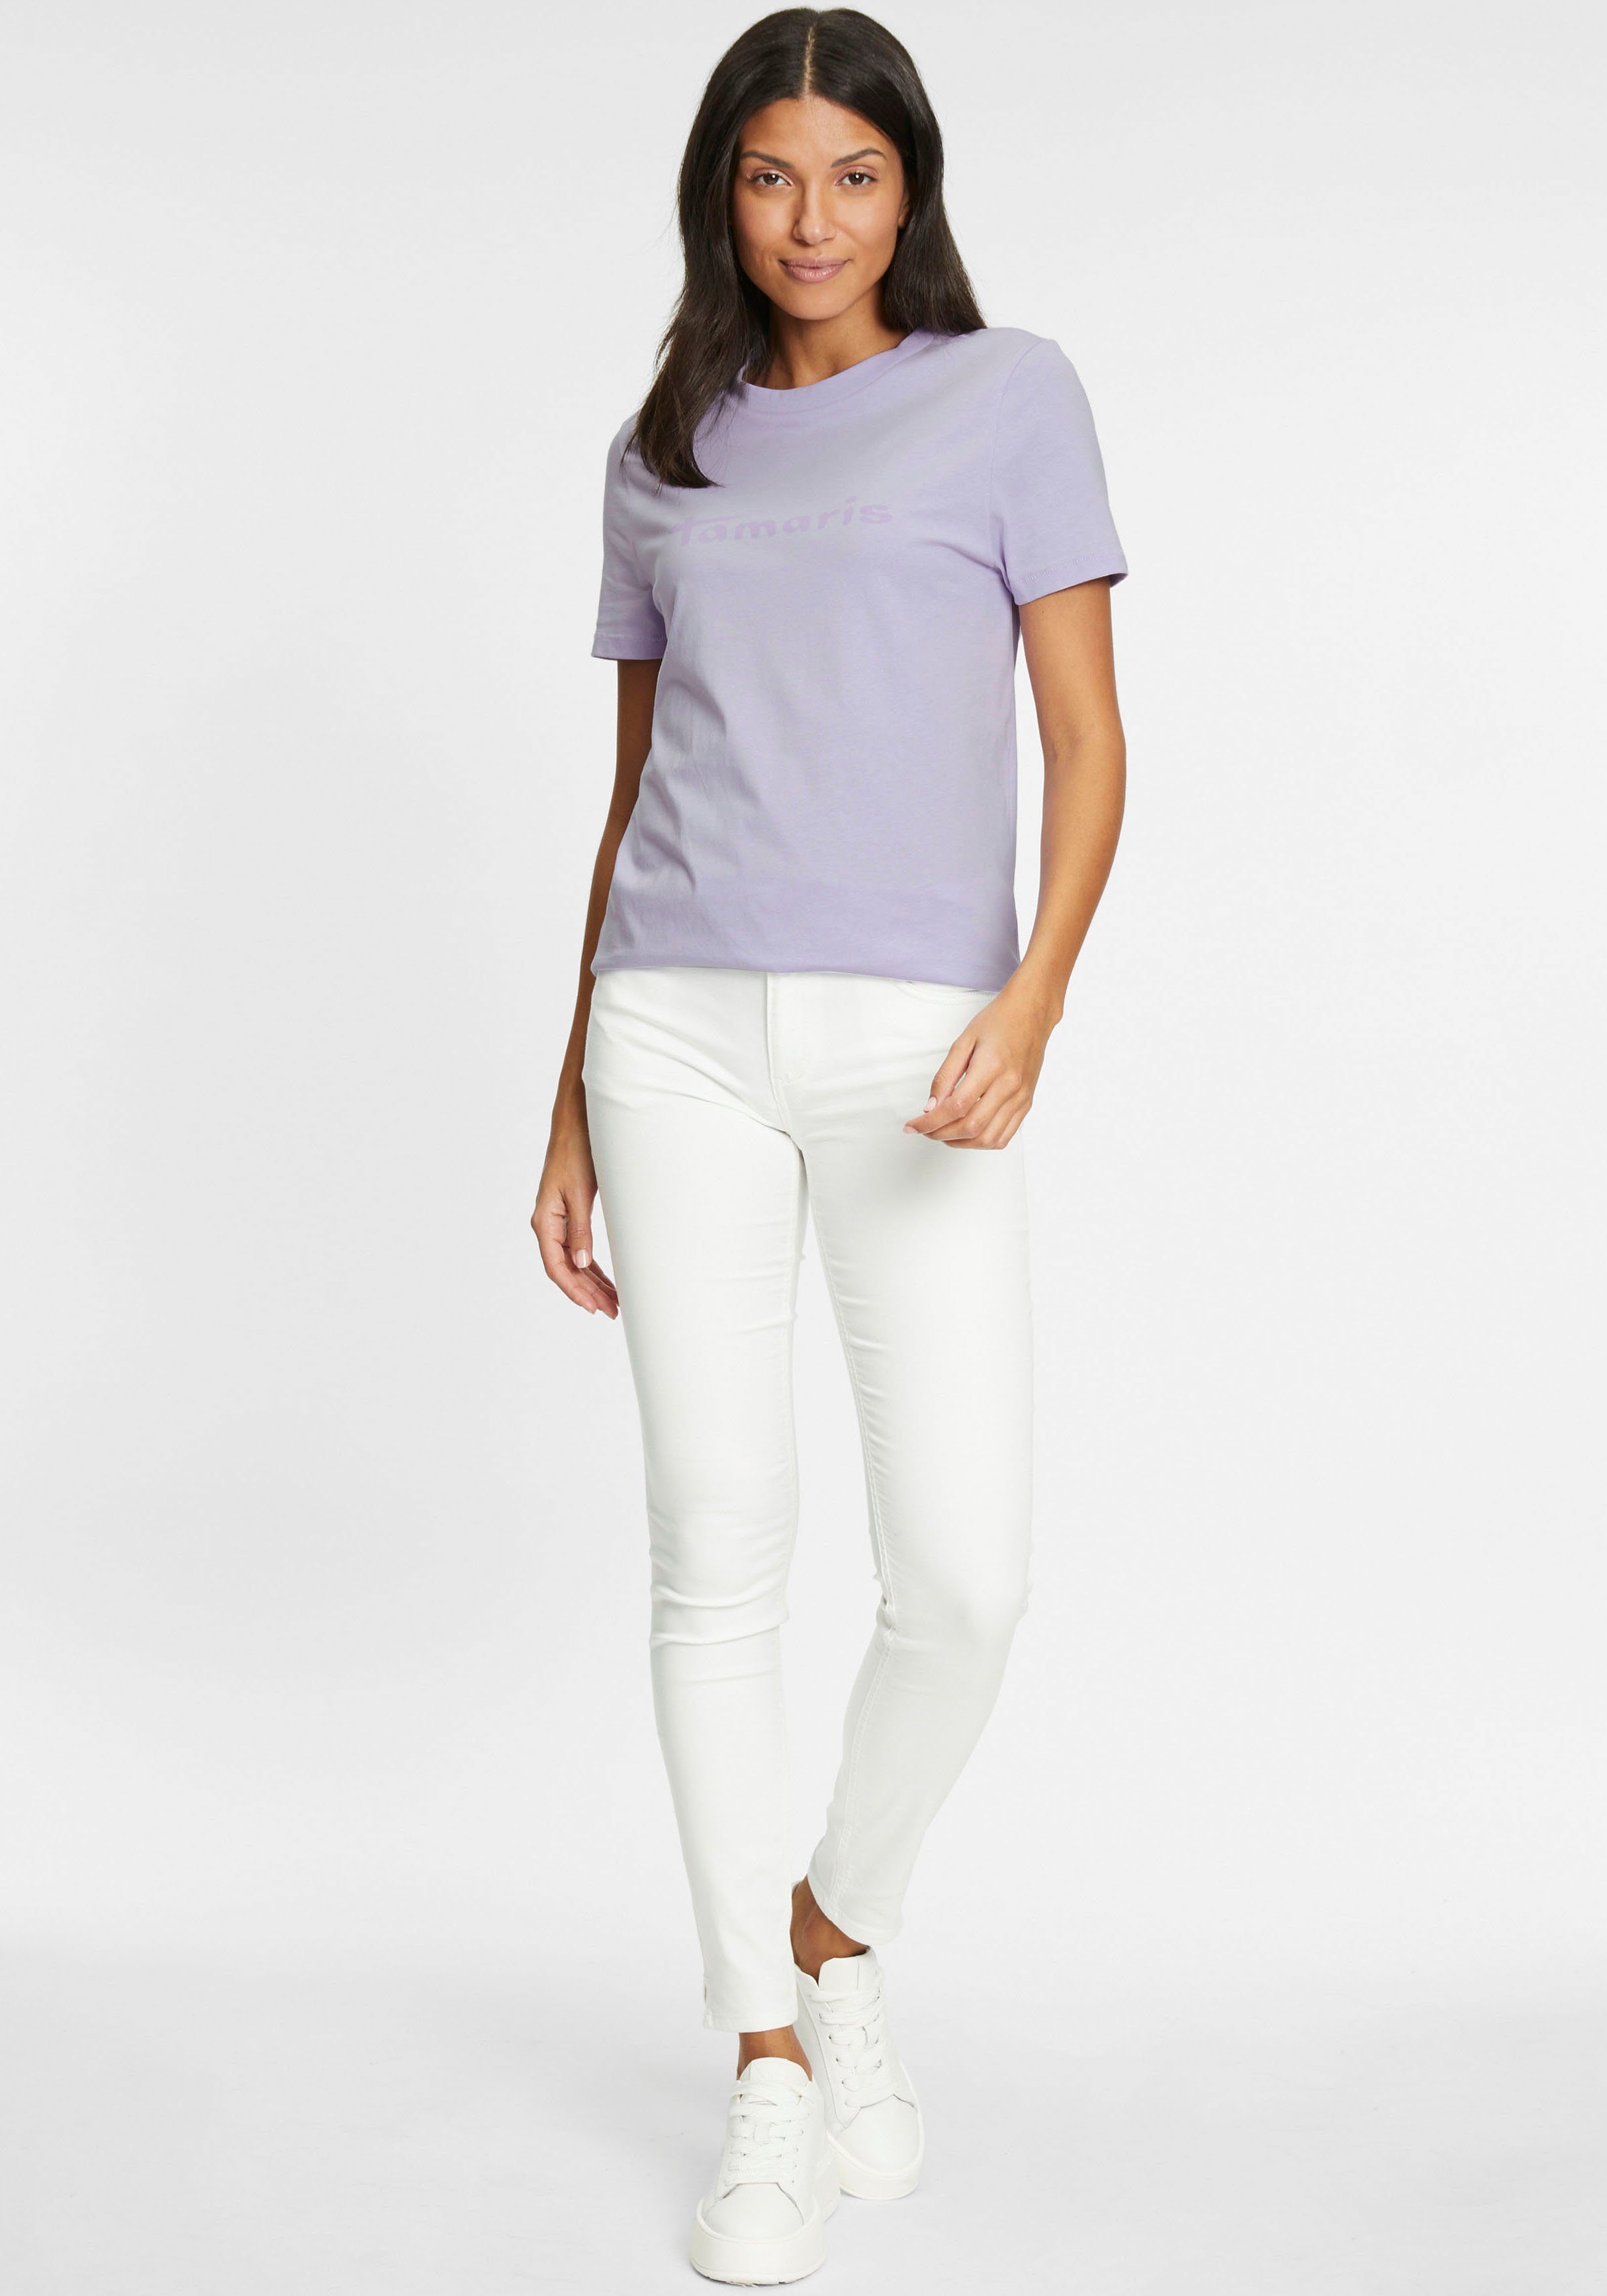 Tamaris lavender - NEUE Rundhalsausschnitt mit KOLLEKTION T-Shirt